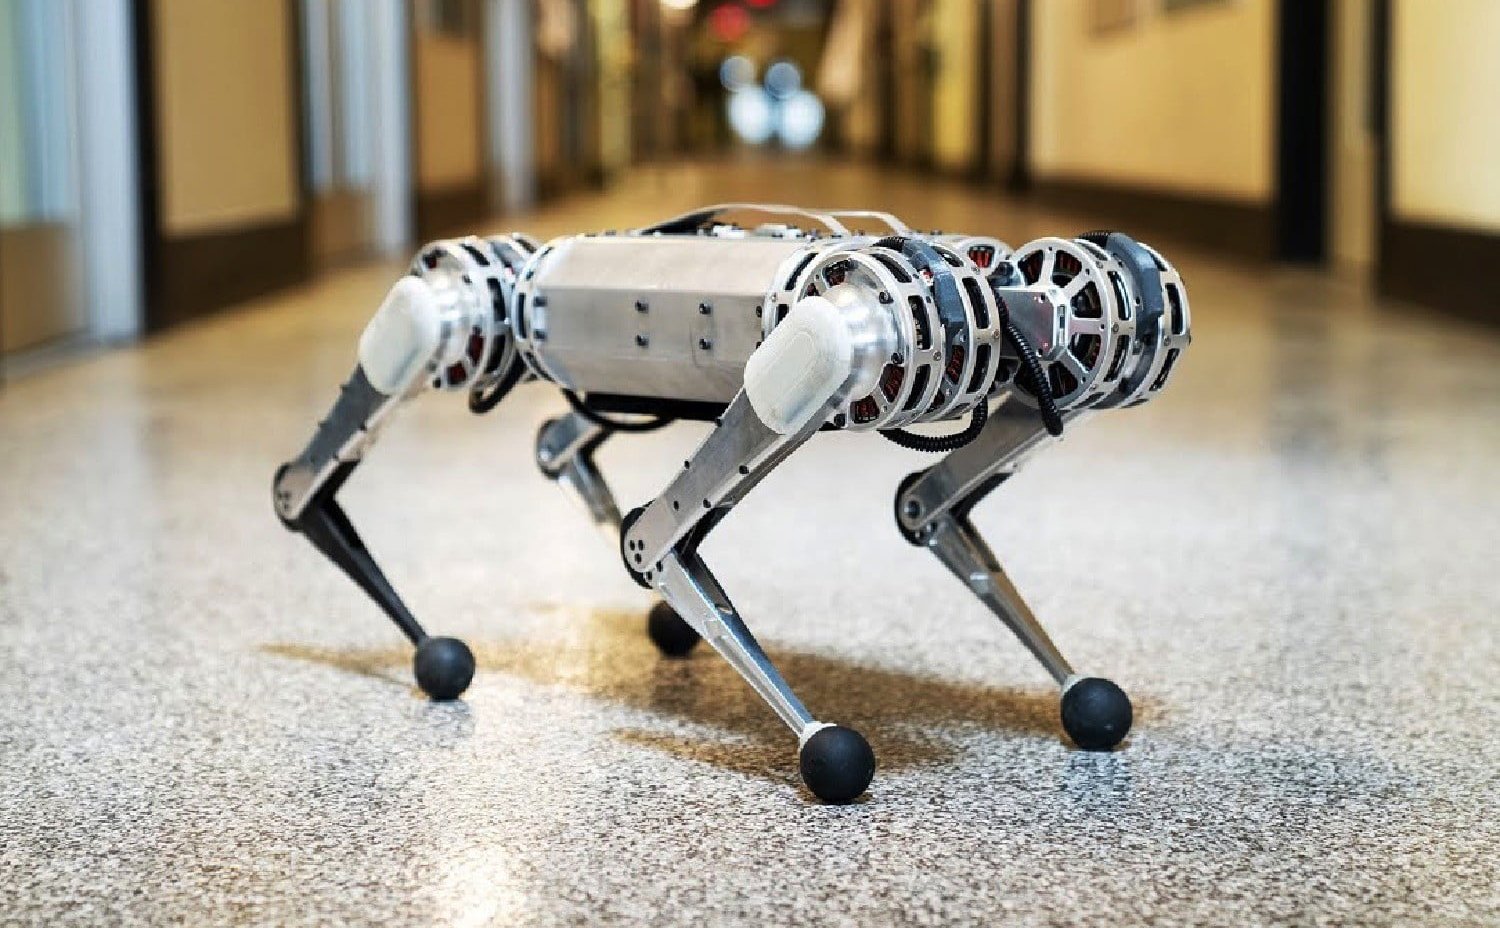 Robot mới của MIT có thể lộn ngược, vẫn đứng khi bị đạp hoặc thả trên cao xuống